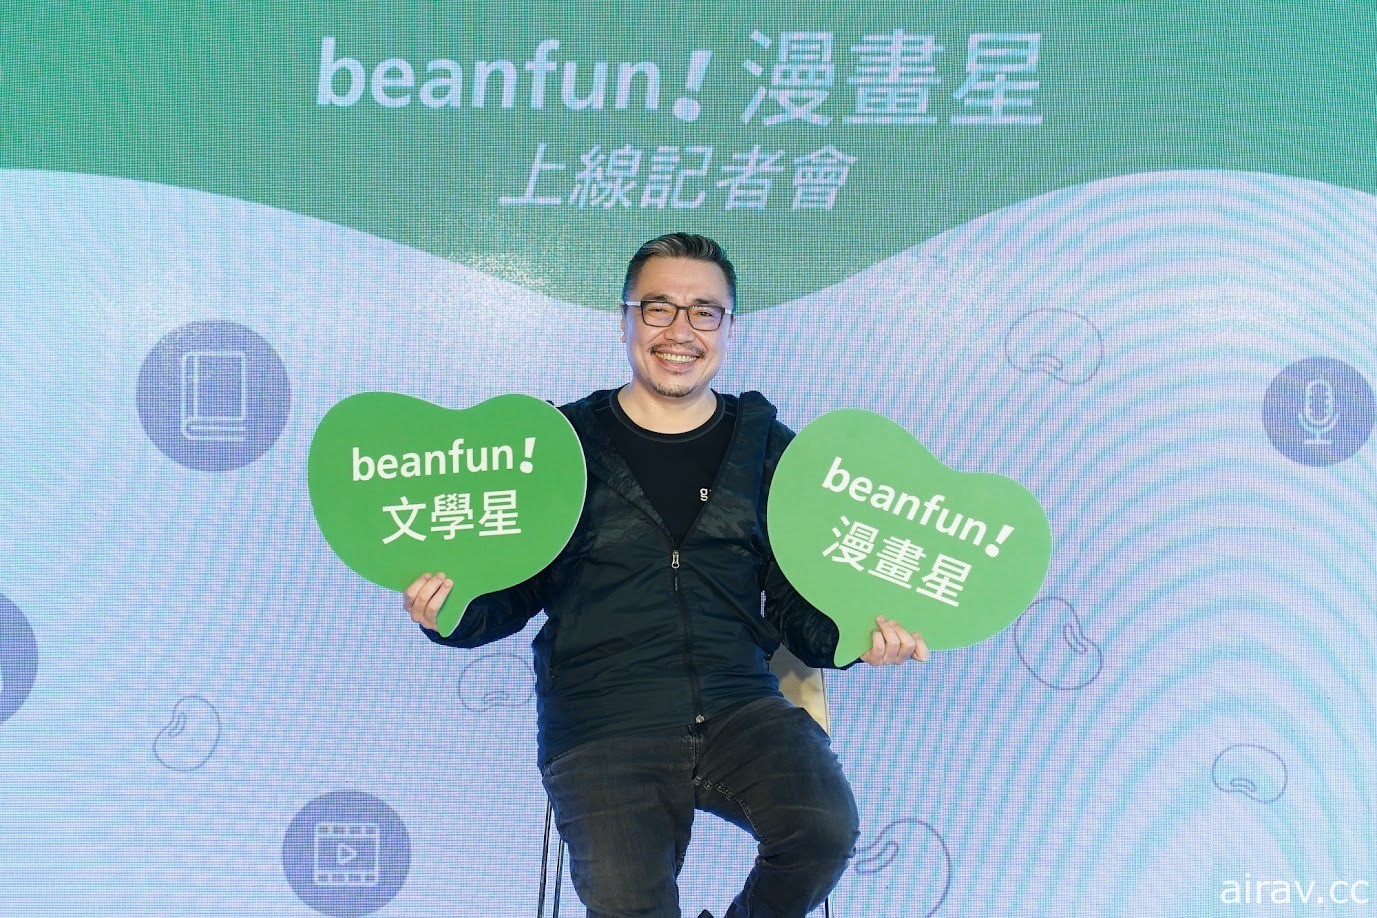 橘子集團推出 beanfun!「漫畫星」挹注五億資金 期許成為台灣原創最佳推手